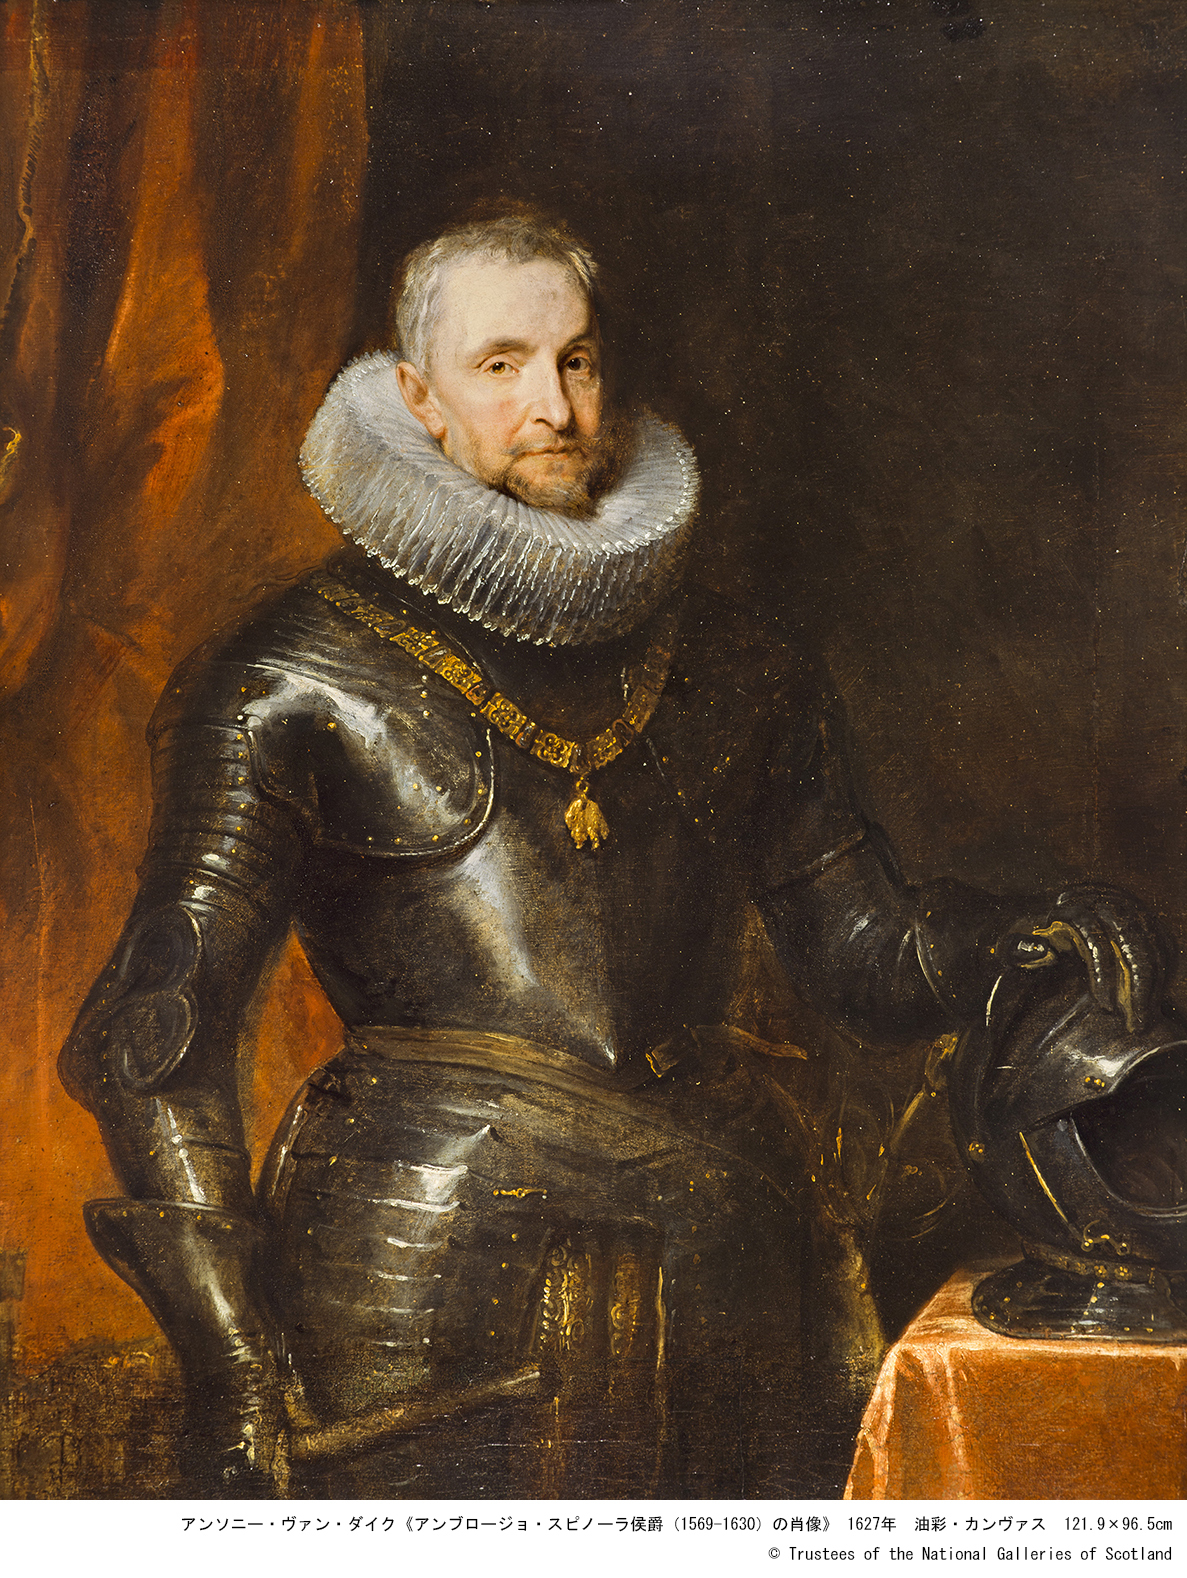 アンソニー・ヴァン・ダイク「アンブロージョ・スピノーラ侯爵（1569-1630）の肖像」 1627年 油彩・カンヴァス 121.9×96.5cm (c) Trustees of the National Galleries of Scotland